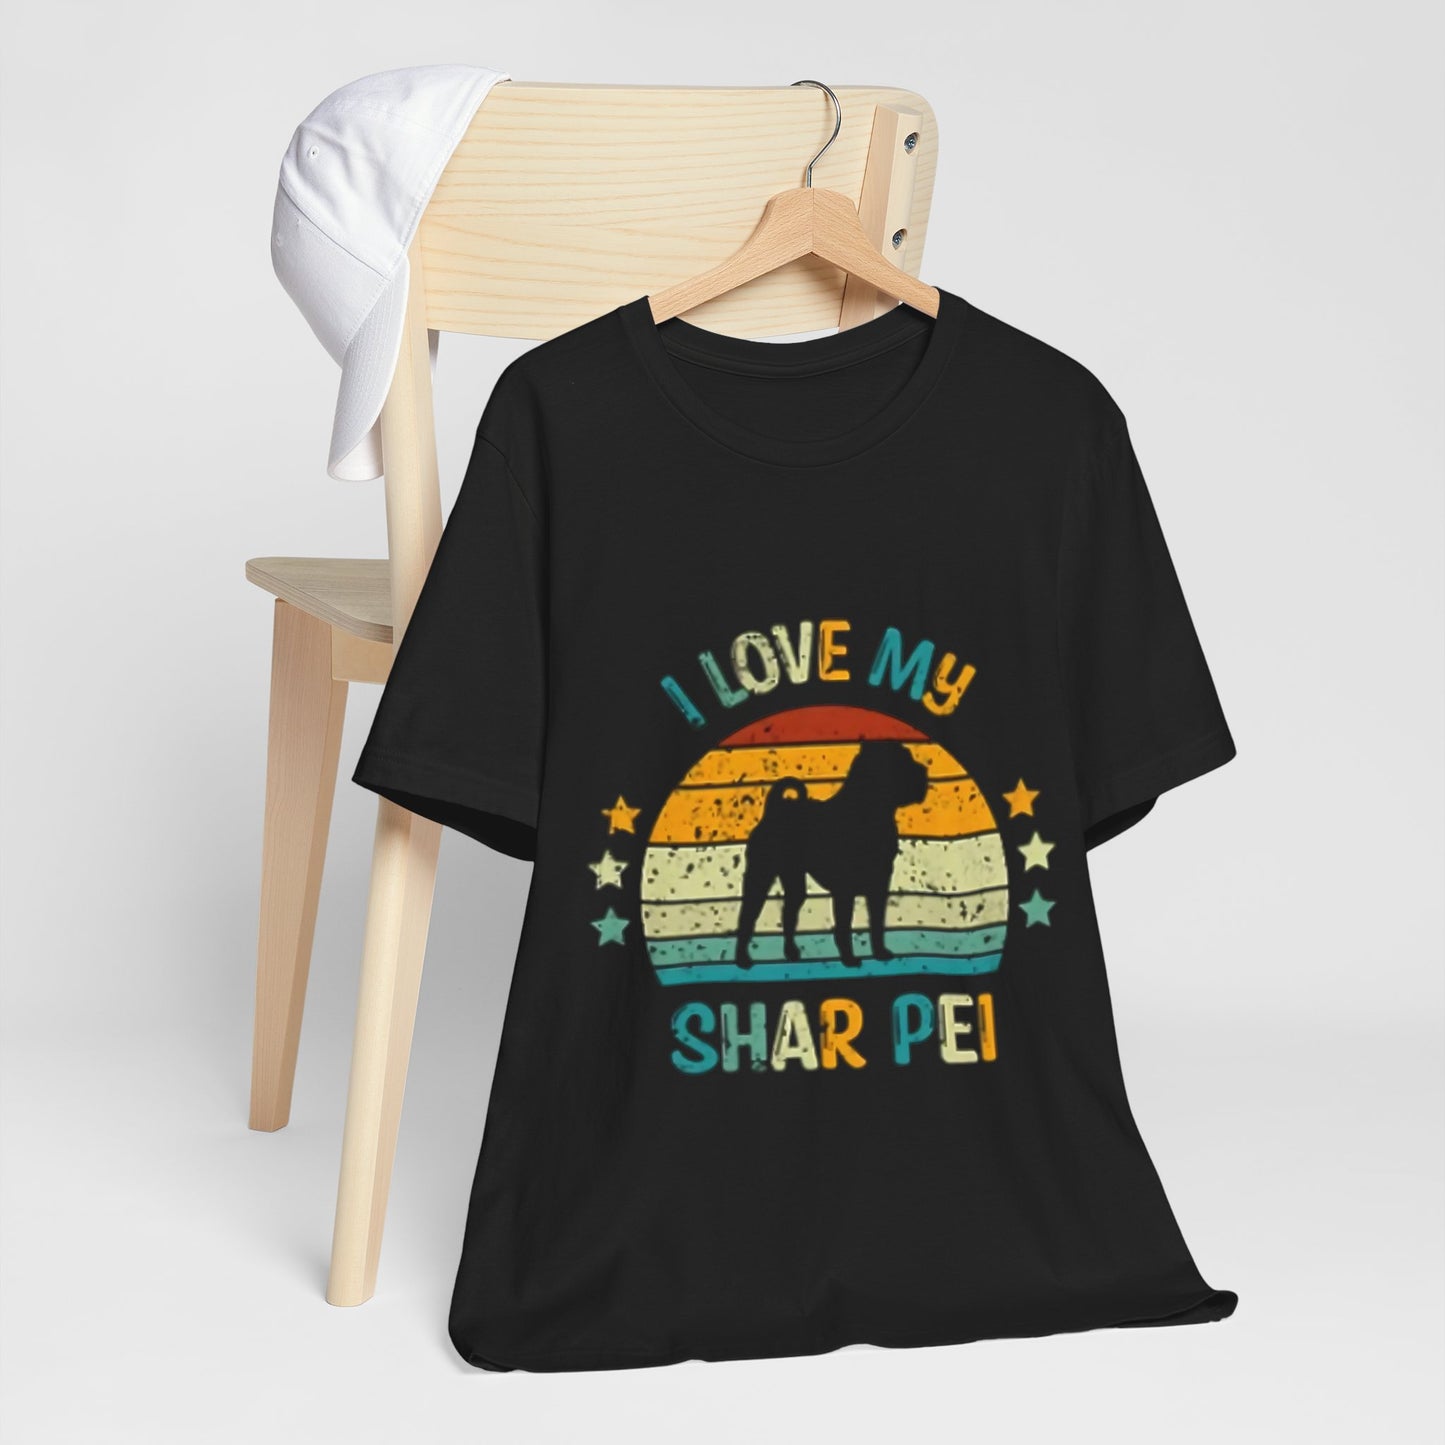 "I love my Shar Pei" Unisex Jersey Short Sleeve Tee